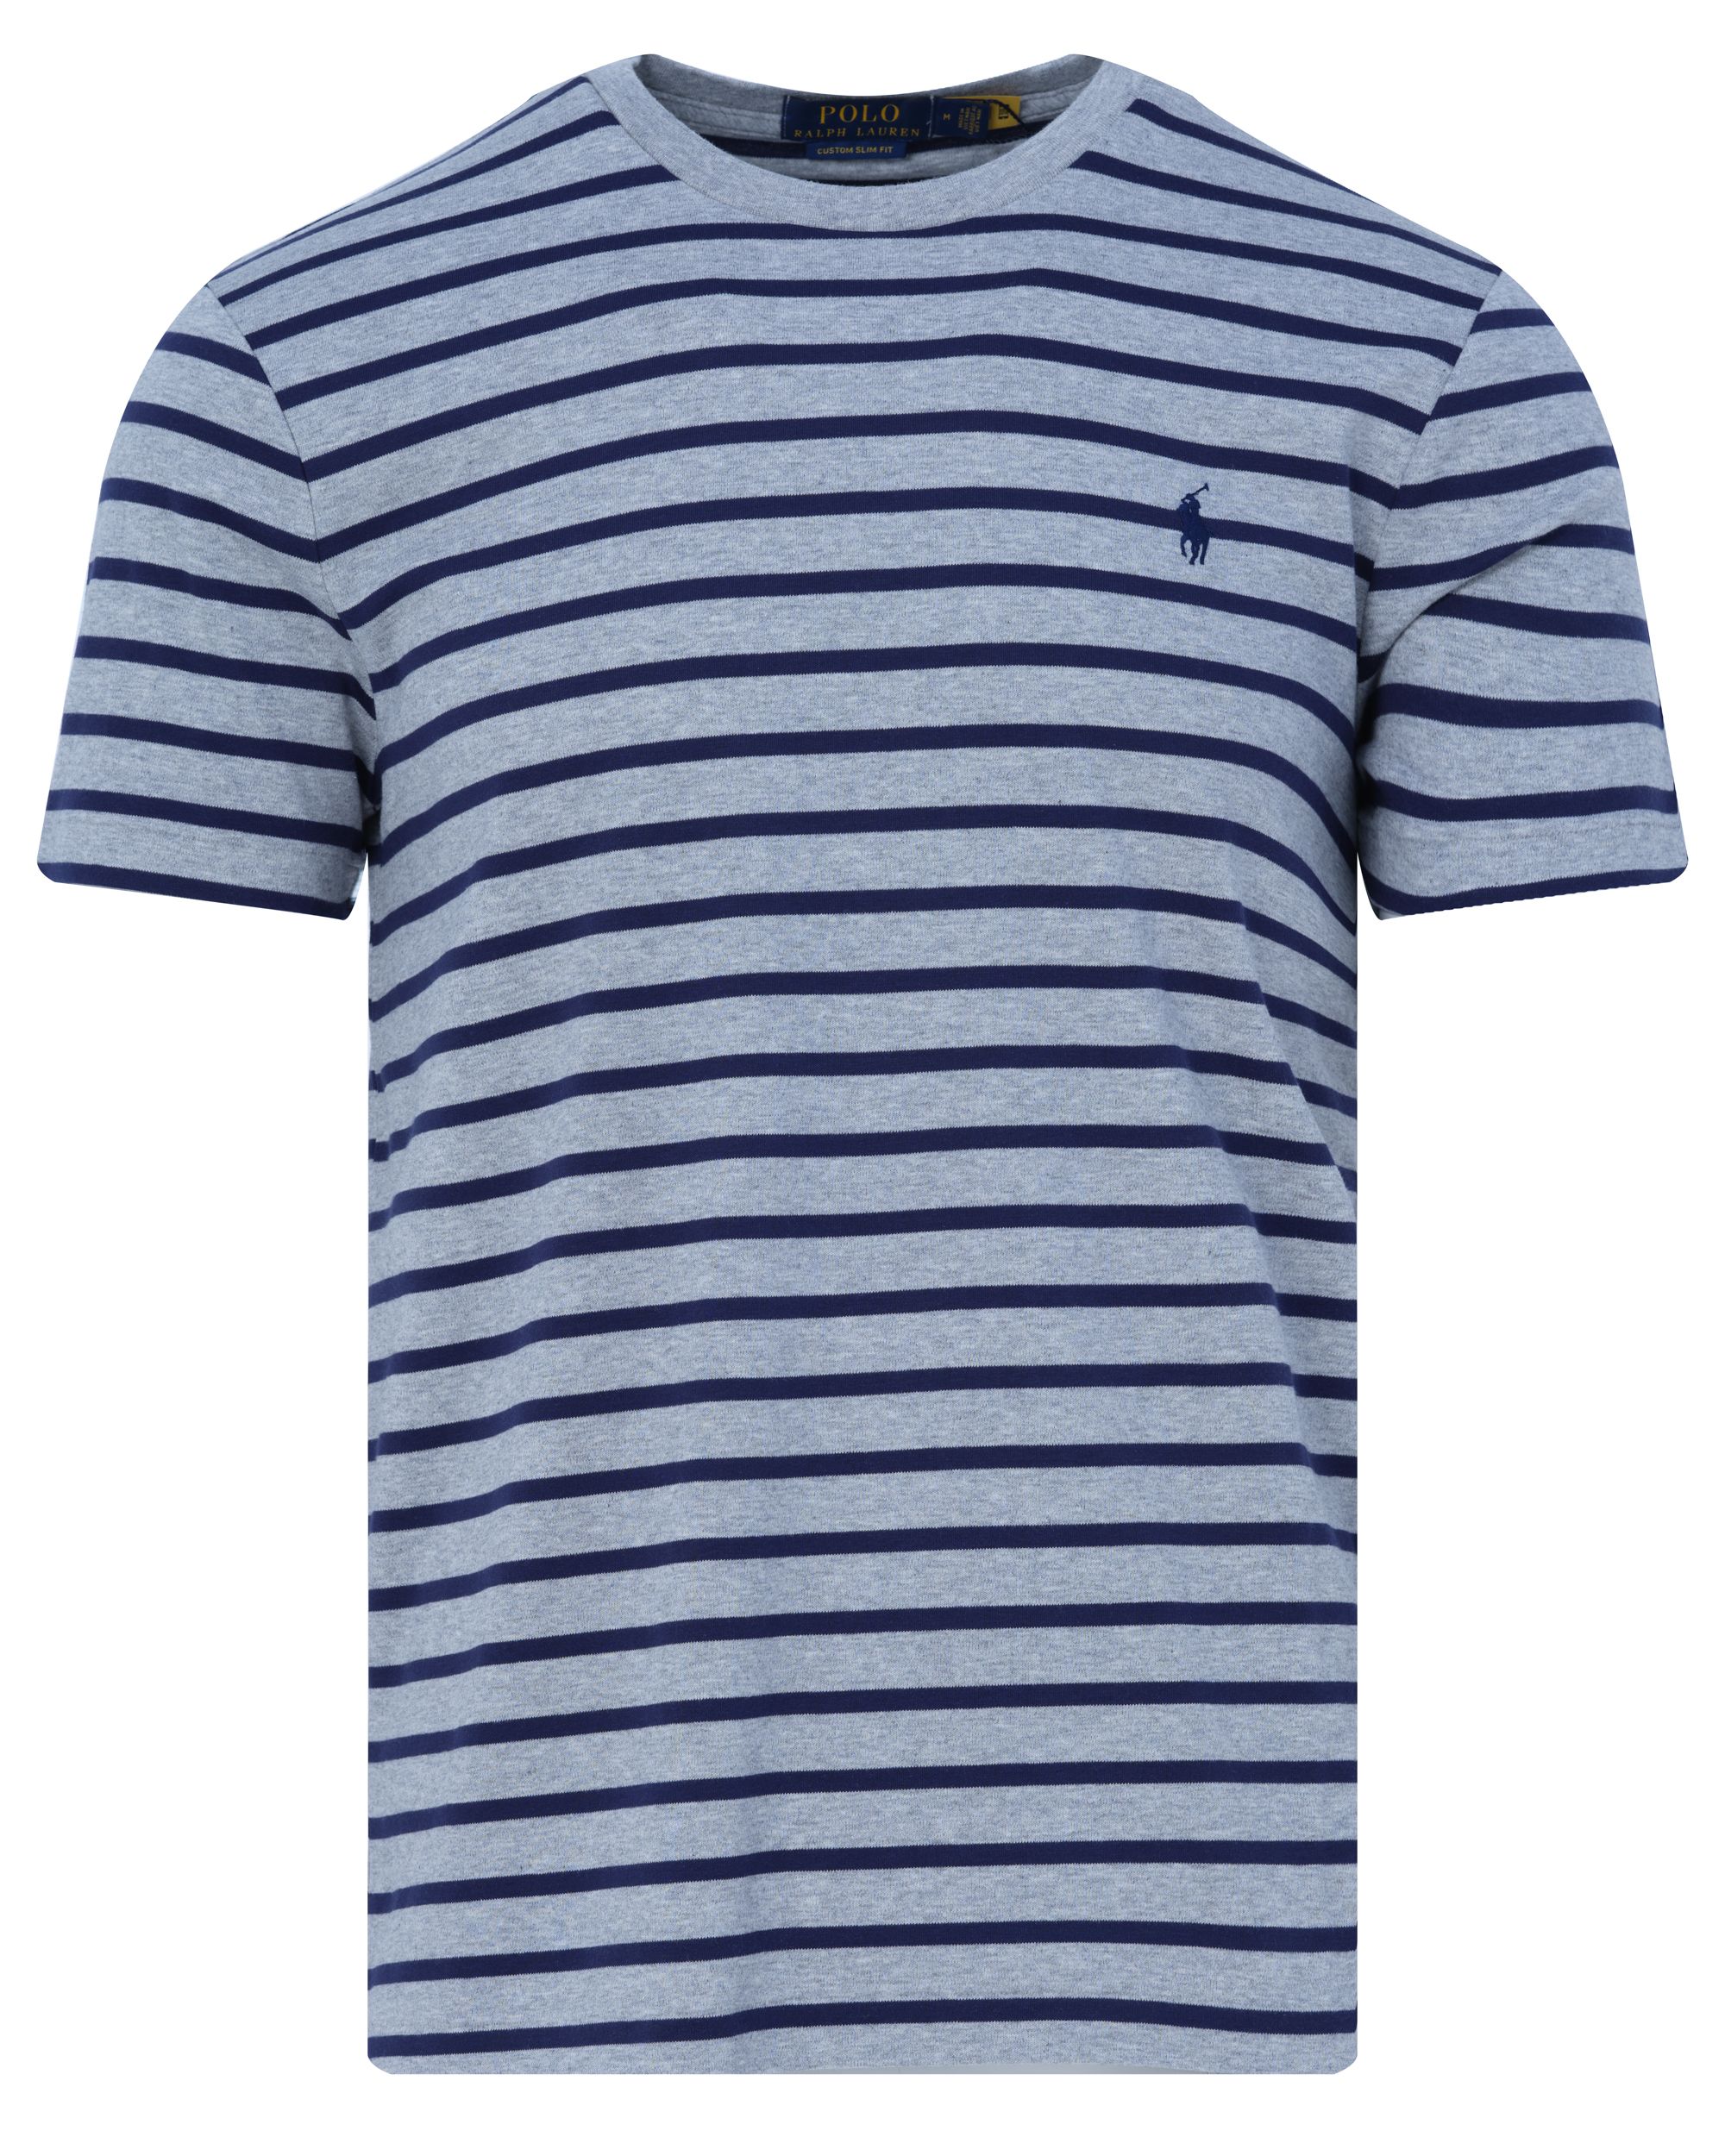 Polo Ralph Lauren T-shirt KM Grijs streep 083488-001-L